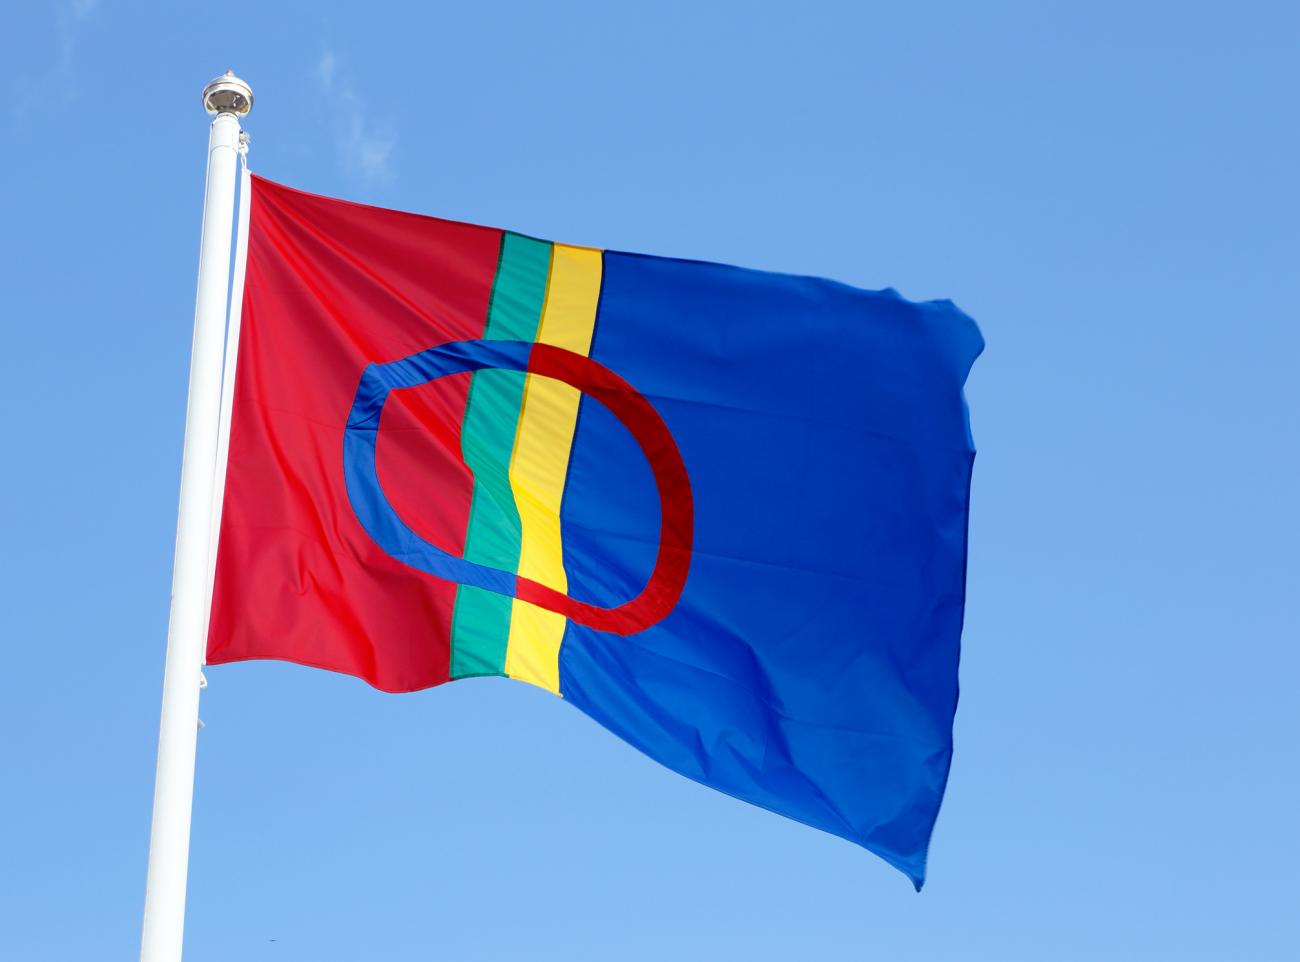 The Sami flag isolated on clear blue sky.